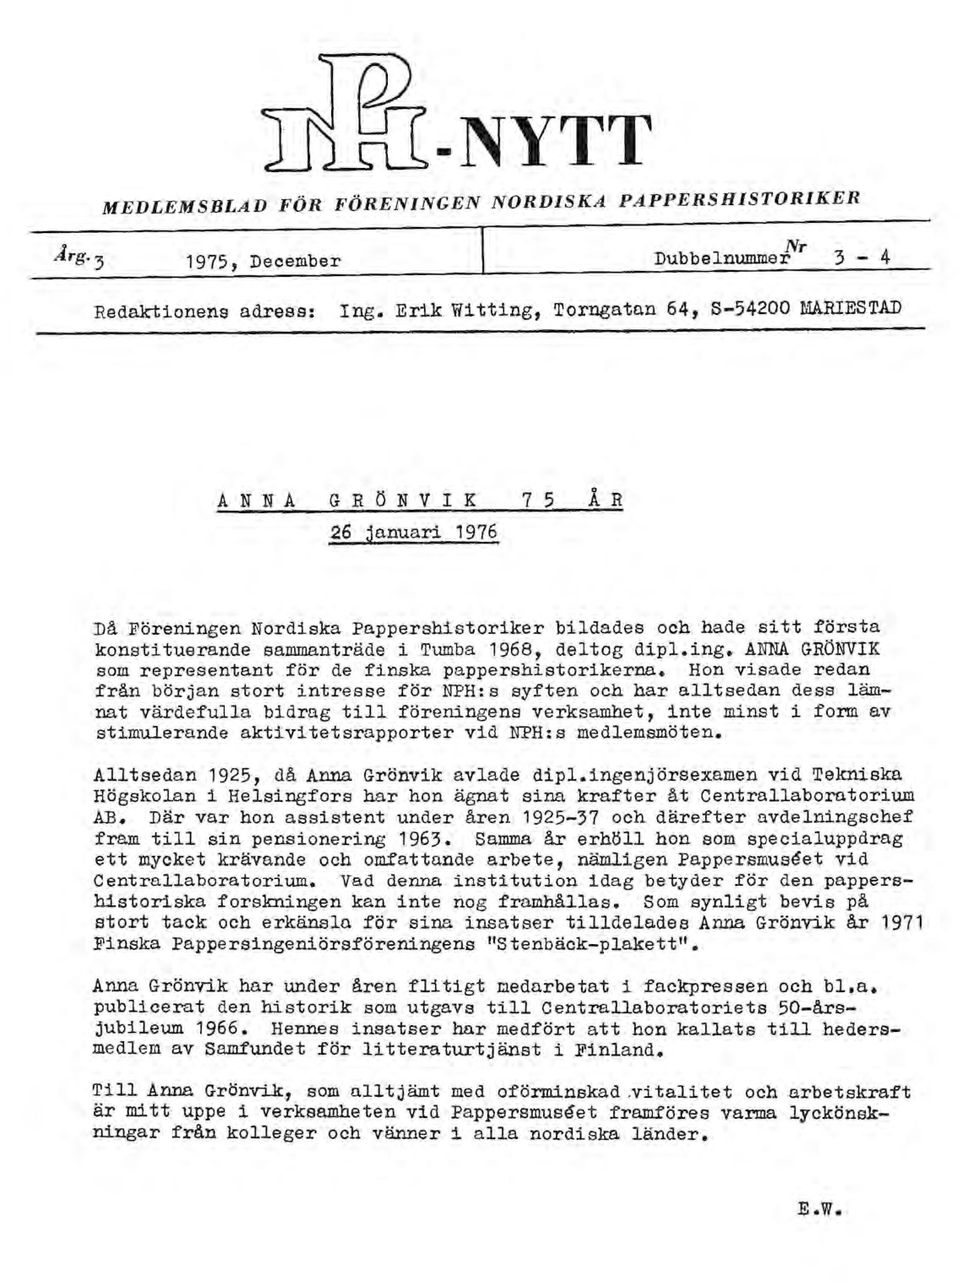 1968, deltog dipl.ing. ANNA GRÖNVIK som representant tör de finska pappershistorikerna.